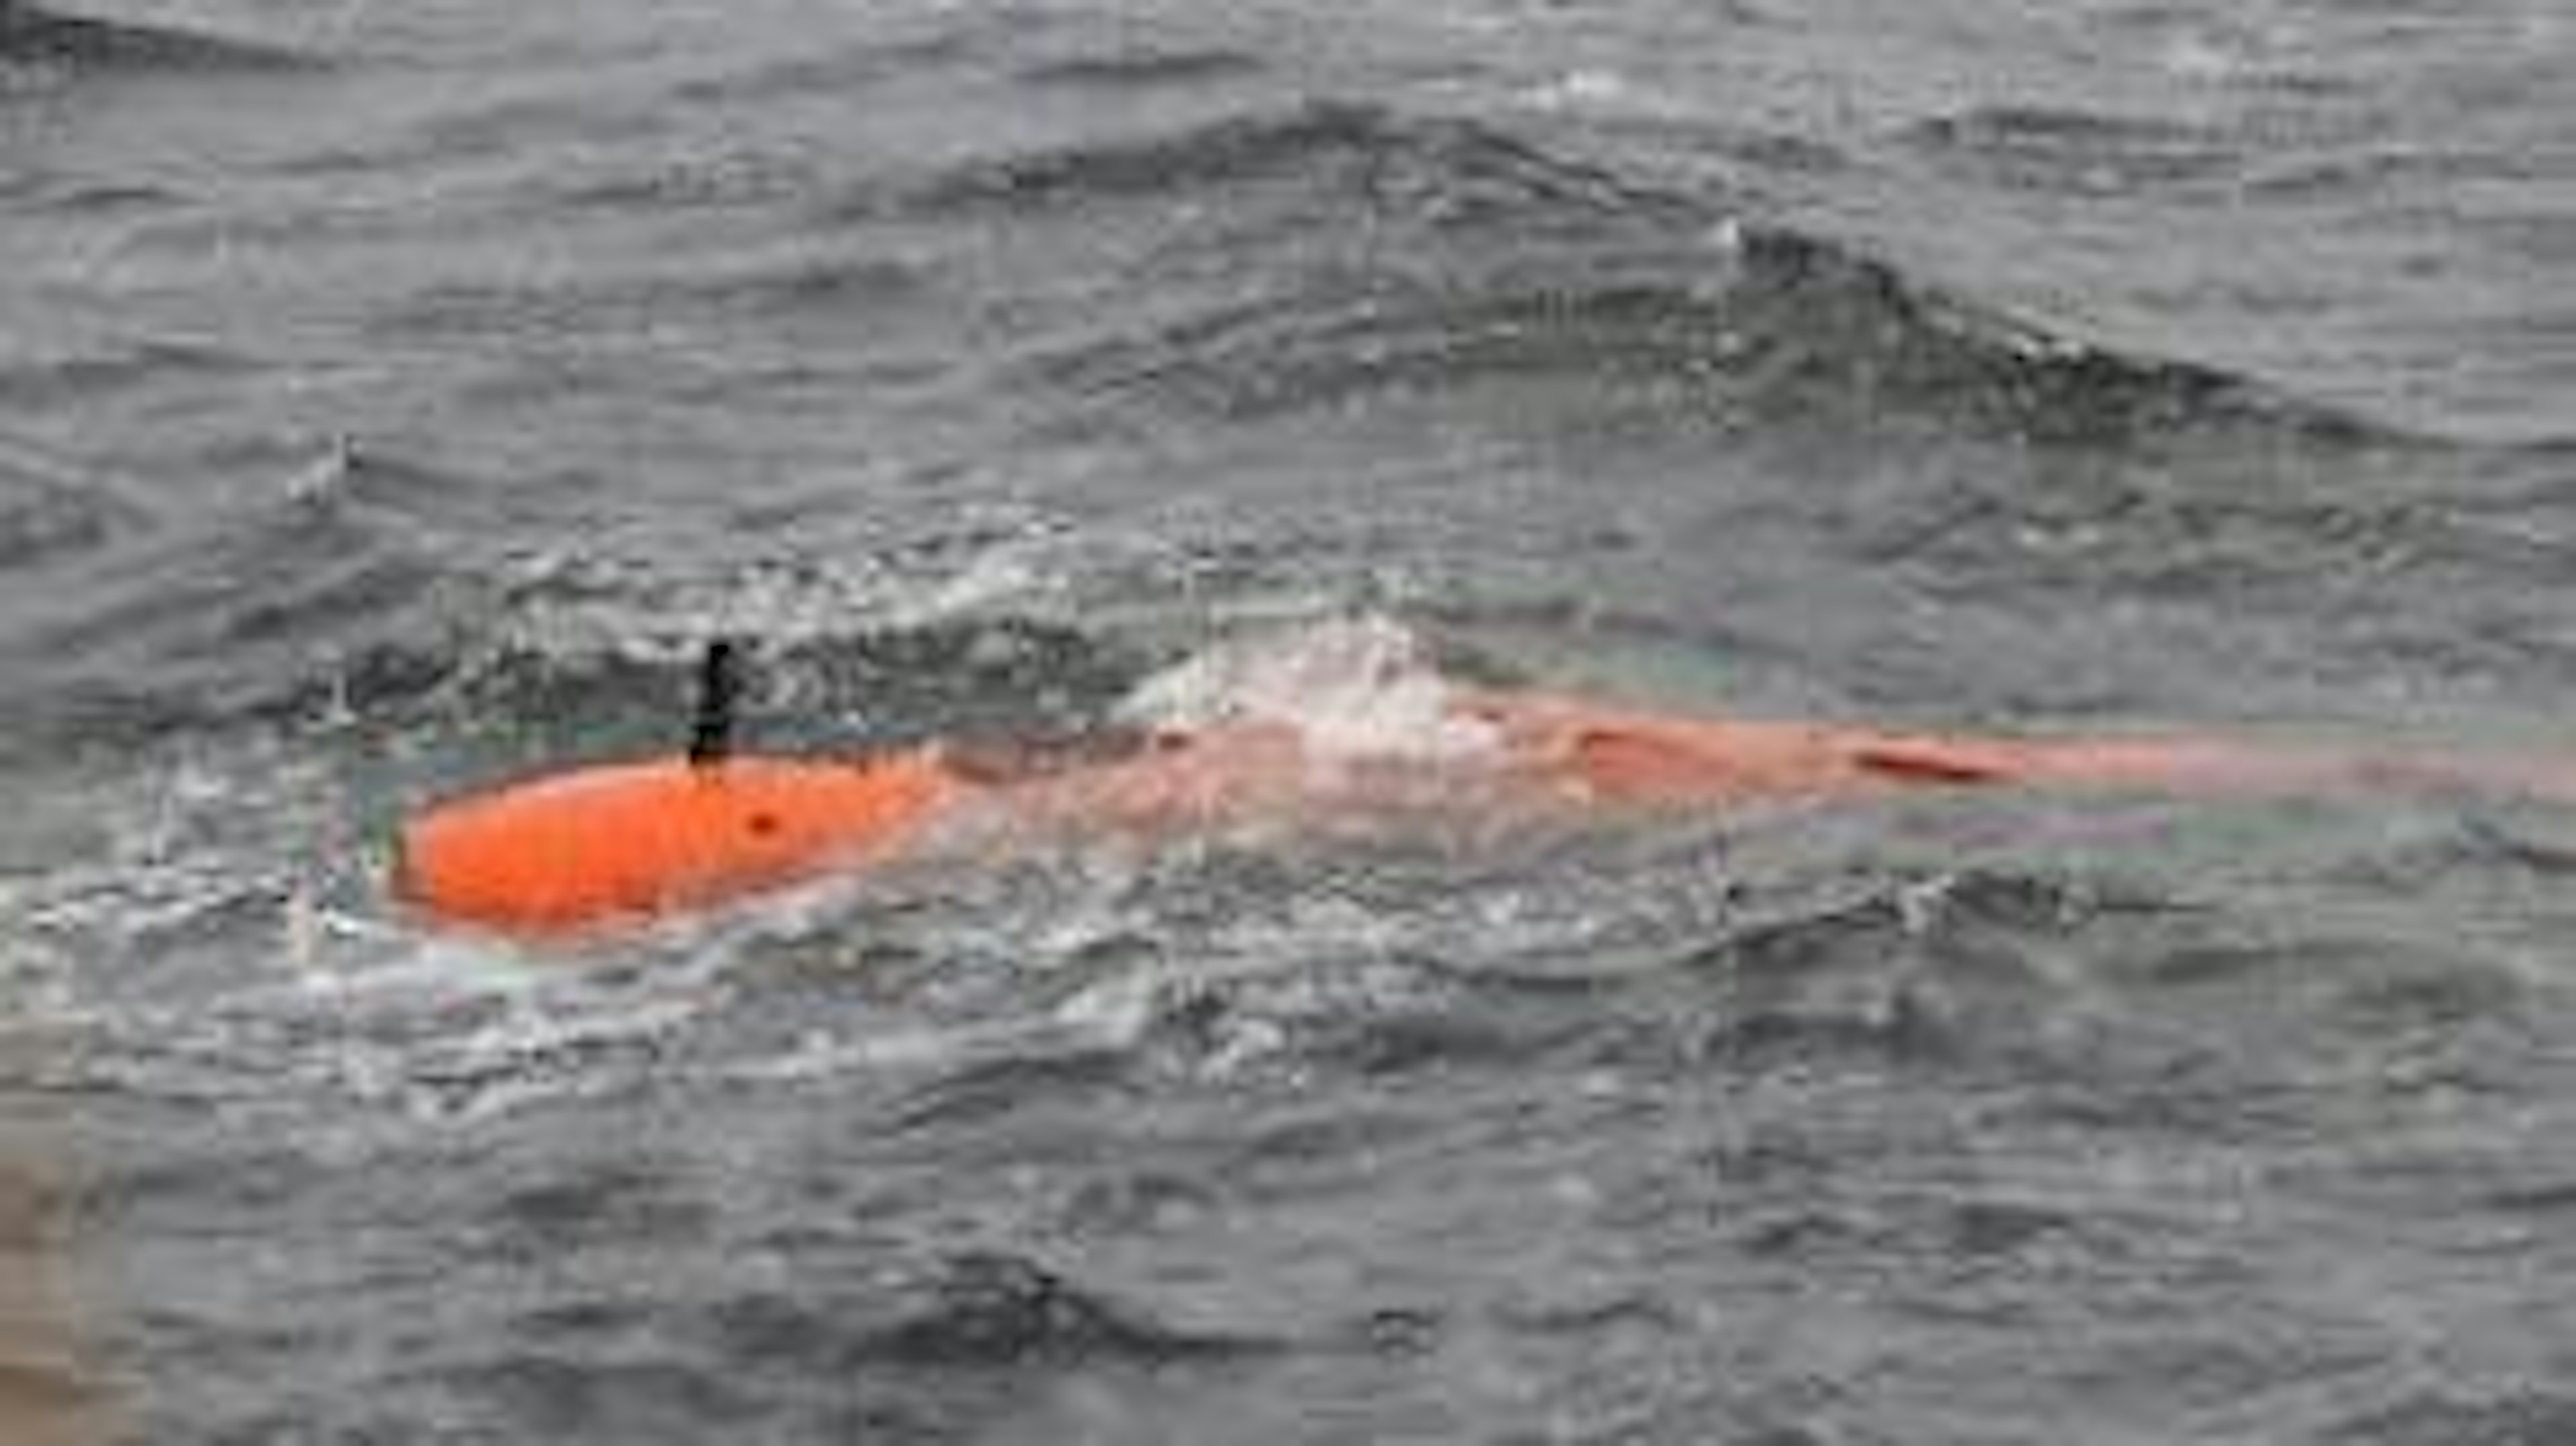 Undervattensfarkosten Ran som har försvunnit under Antarktis isar.